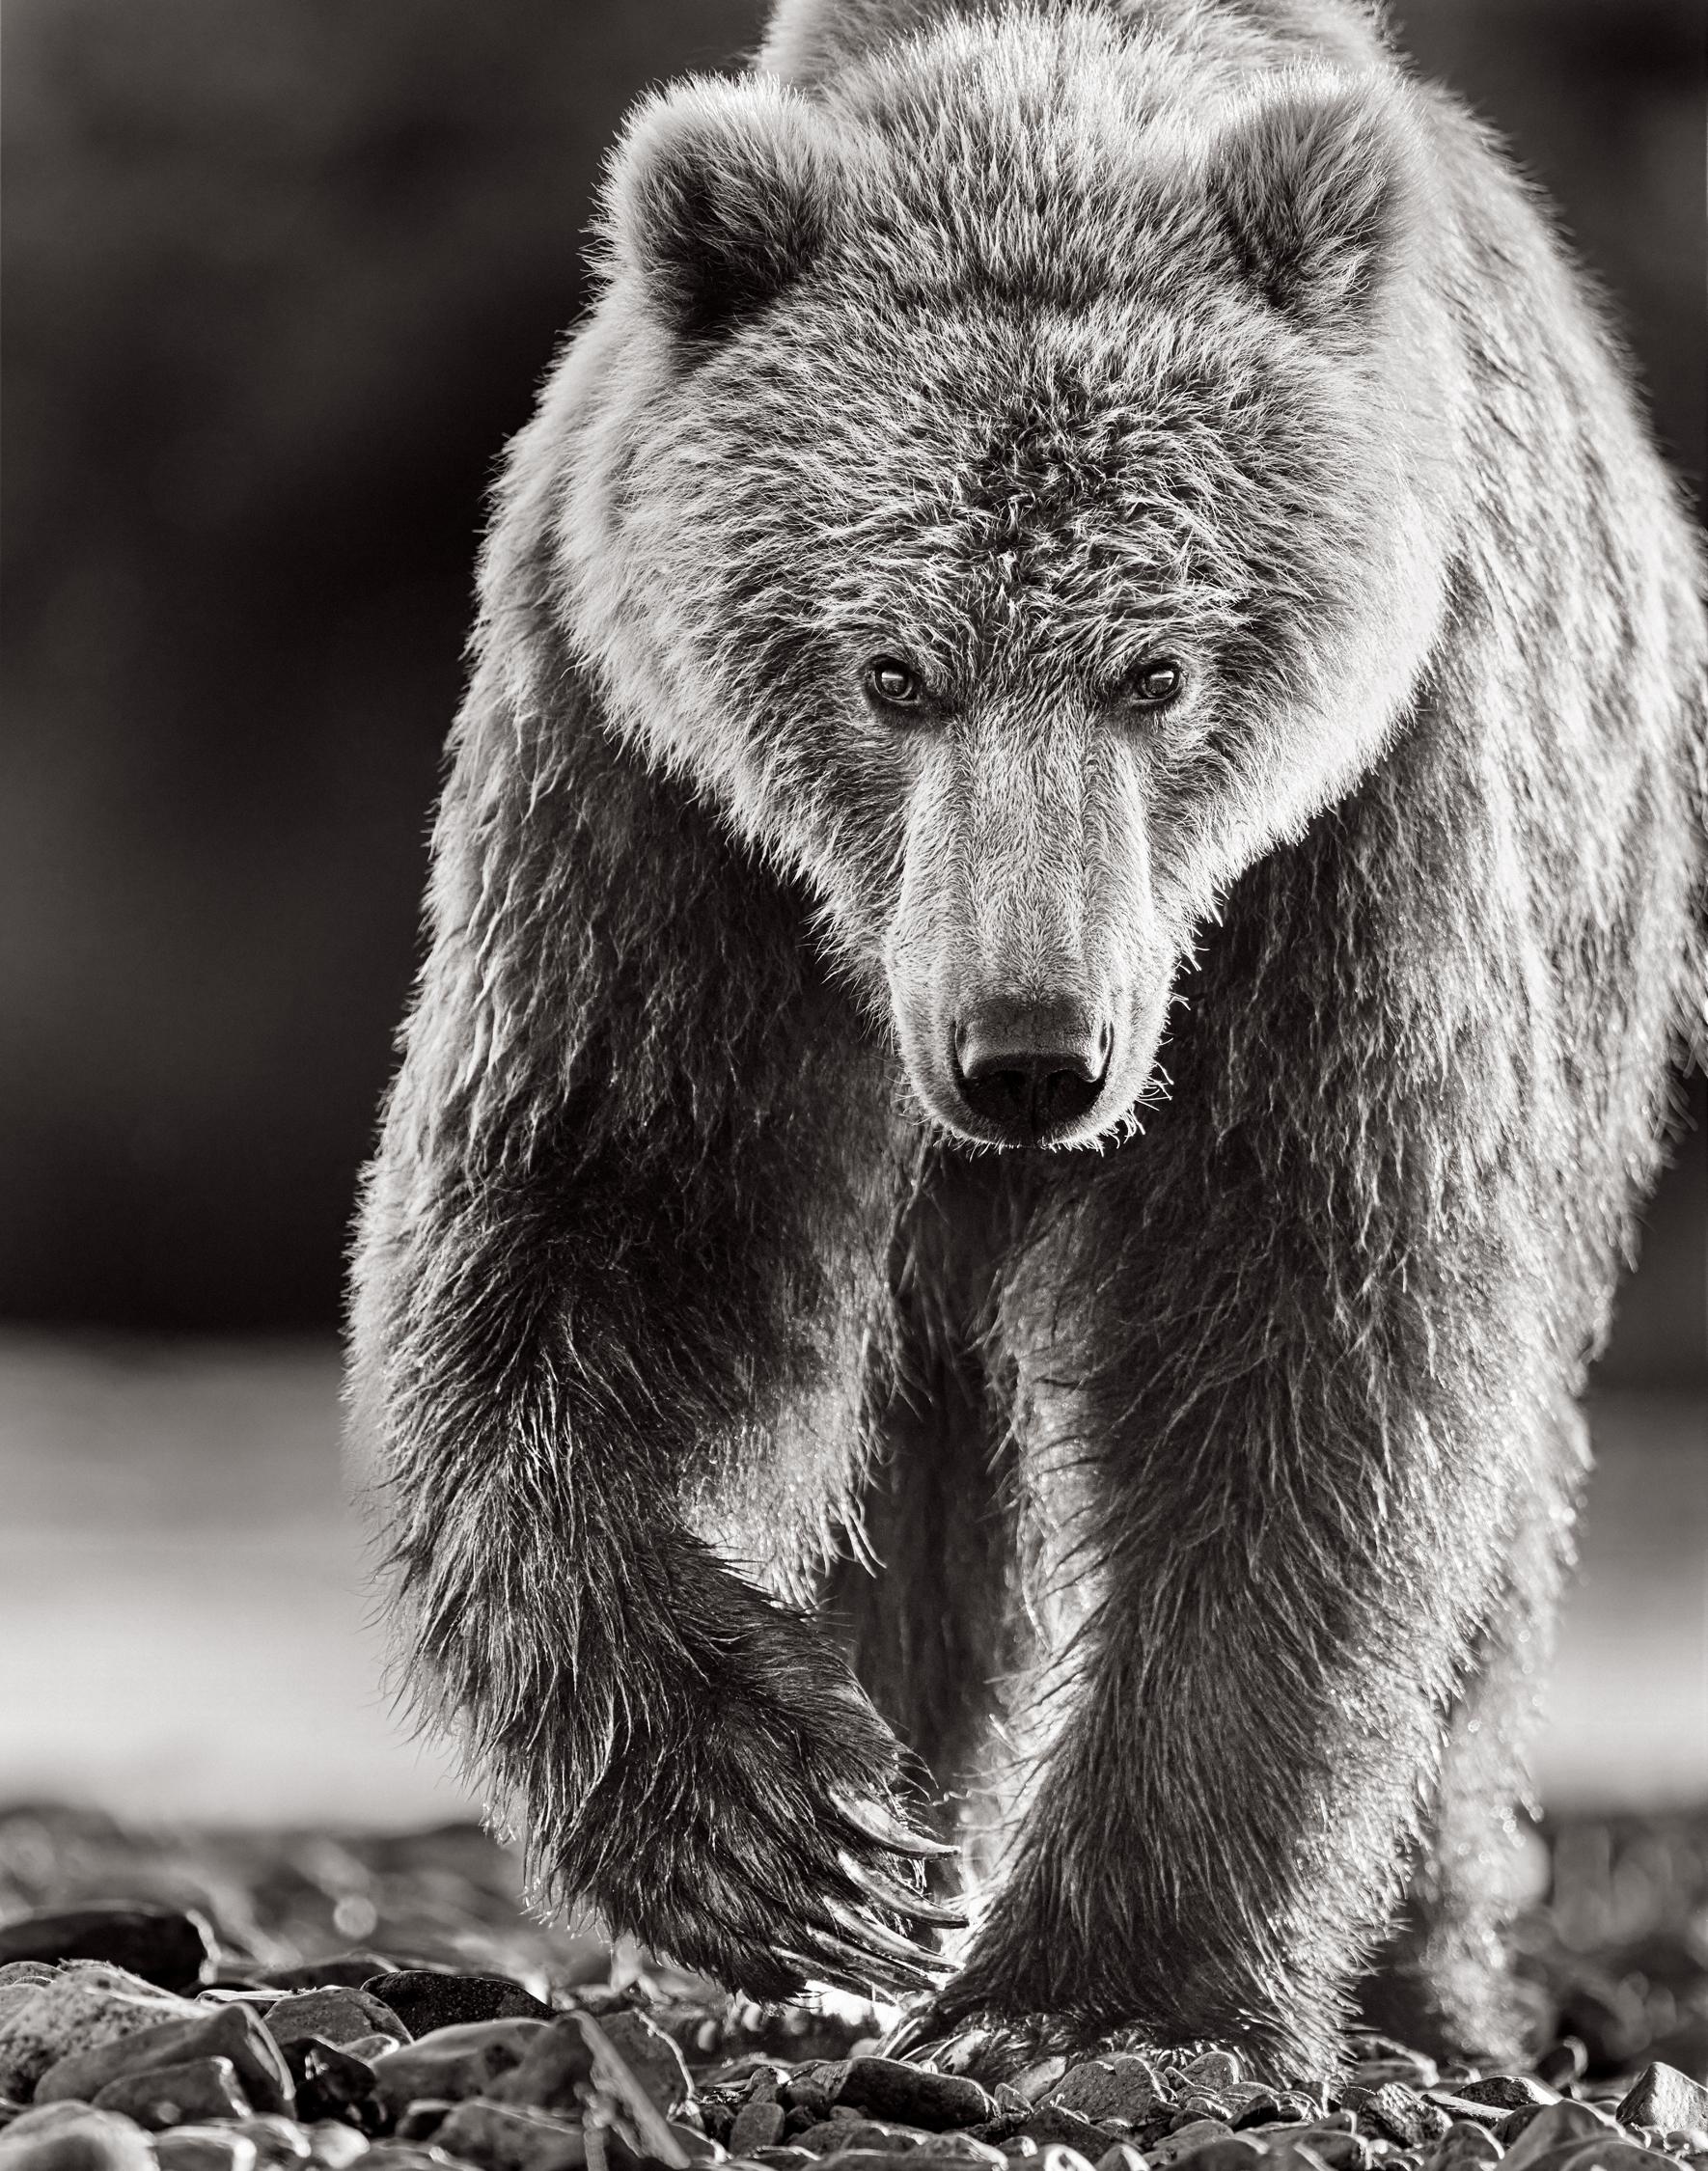 Black and White Photograph Drew Doggett - Portrait intime d'un ours brun se dirigeant vers l'appareil photo